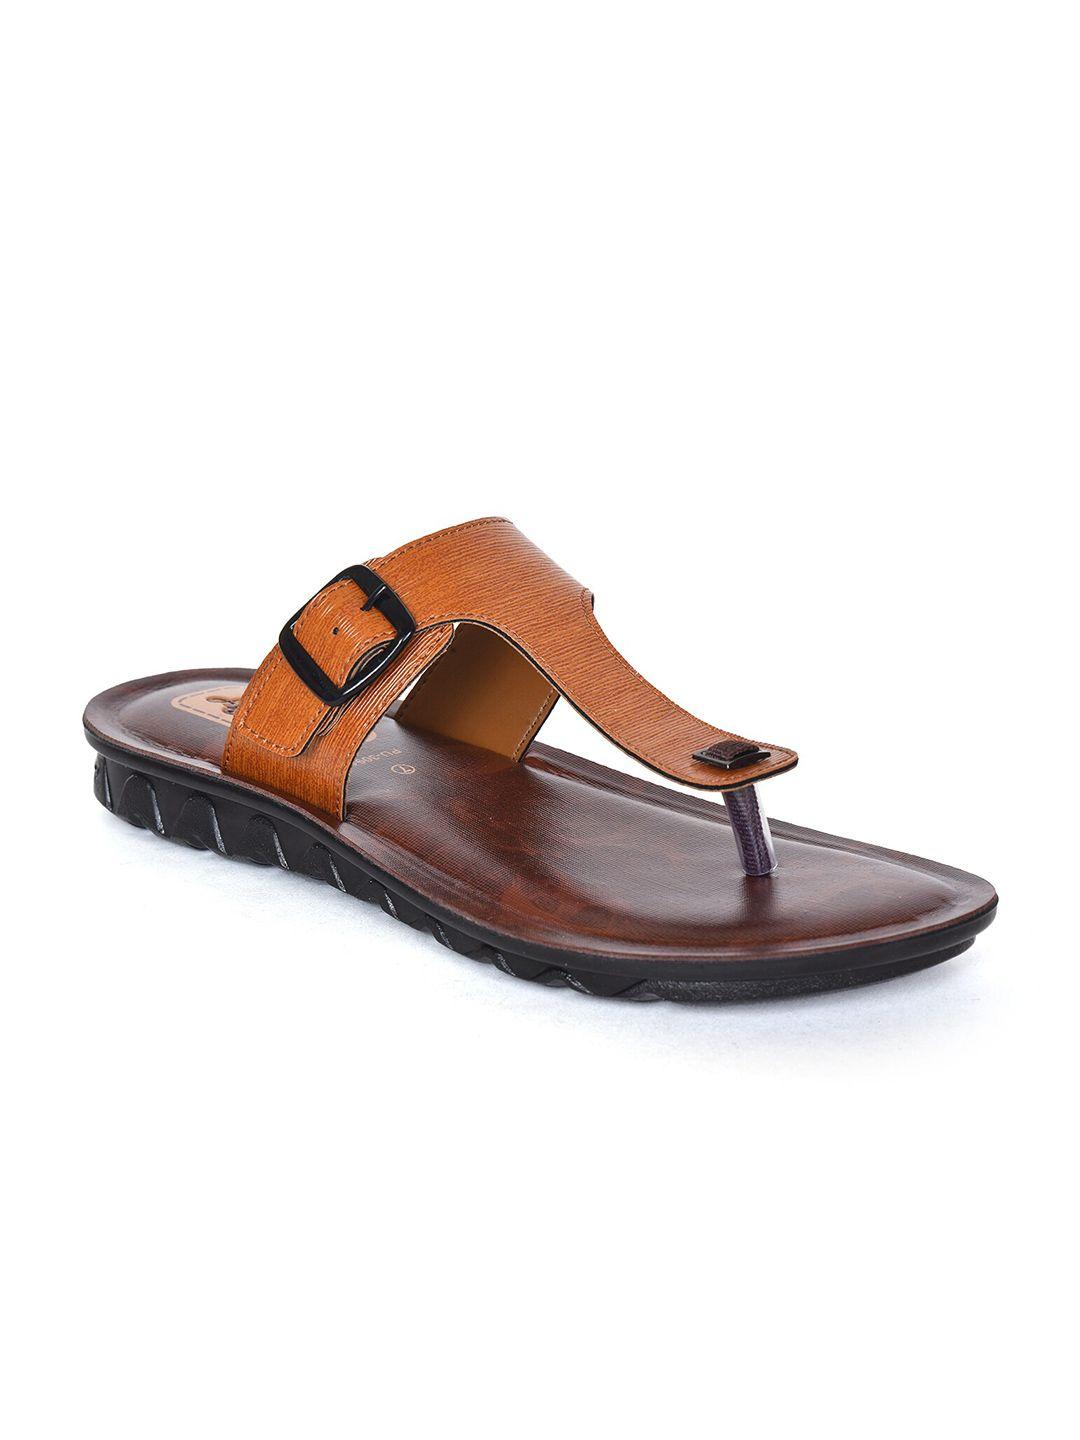 ajanta-men-open-toe-comfort-sandals-with-buckle-detail